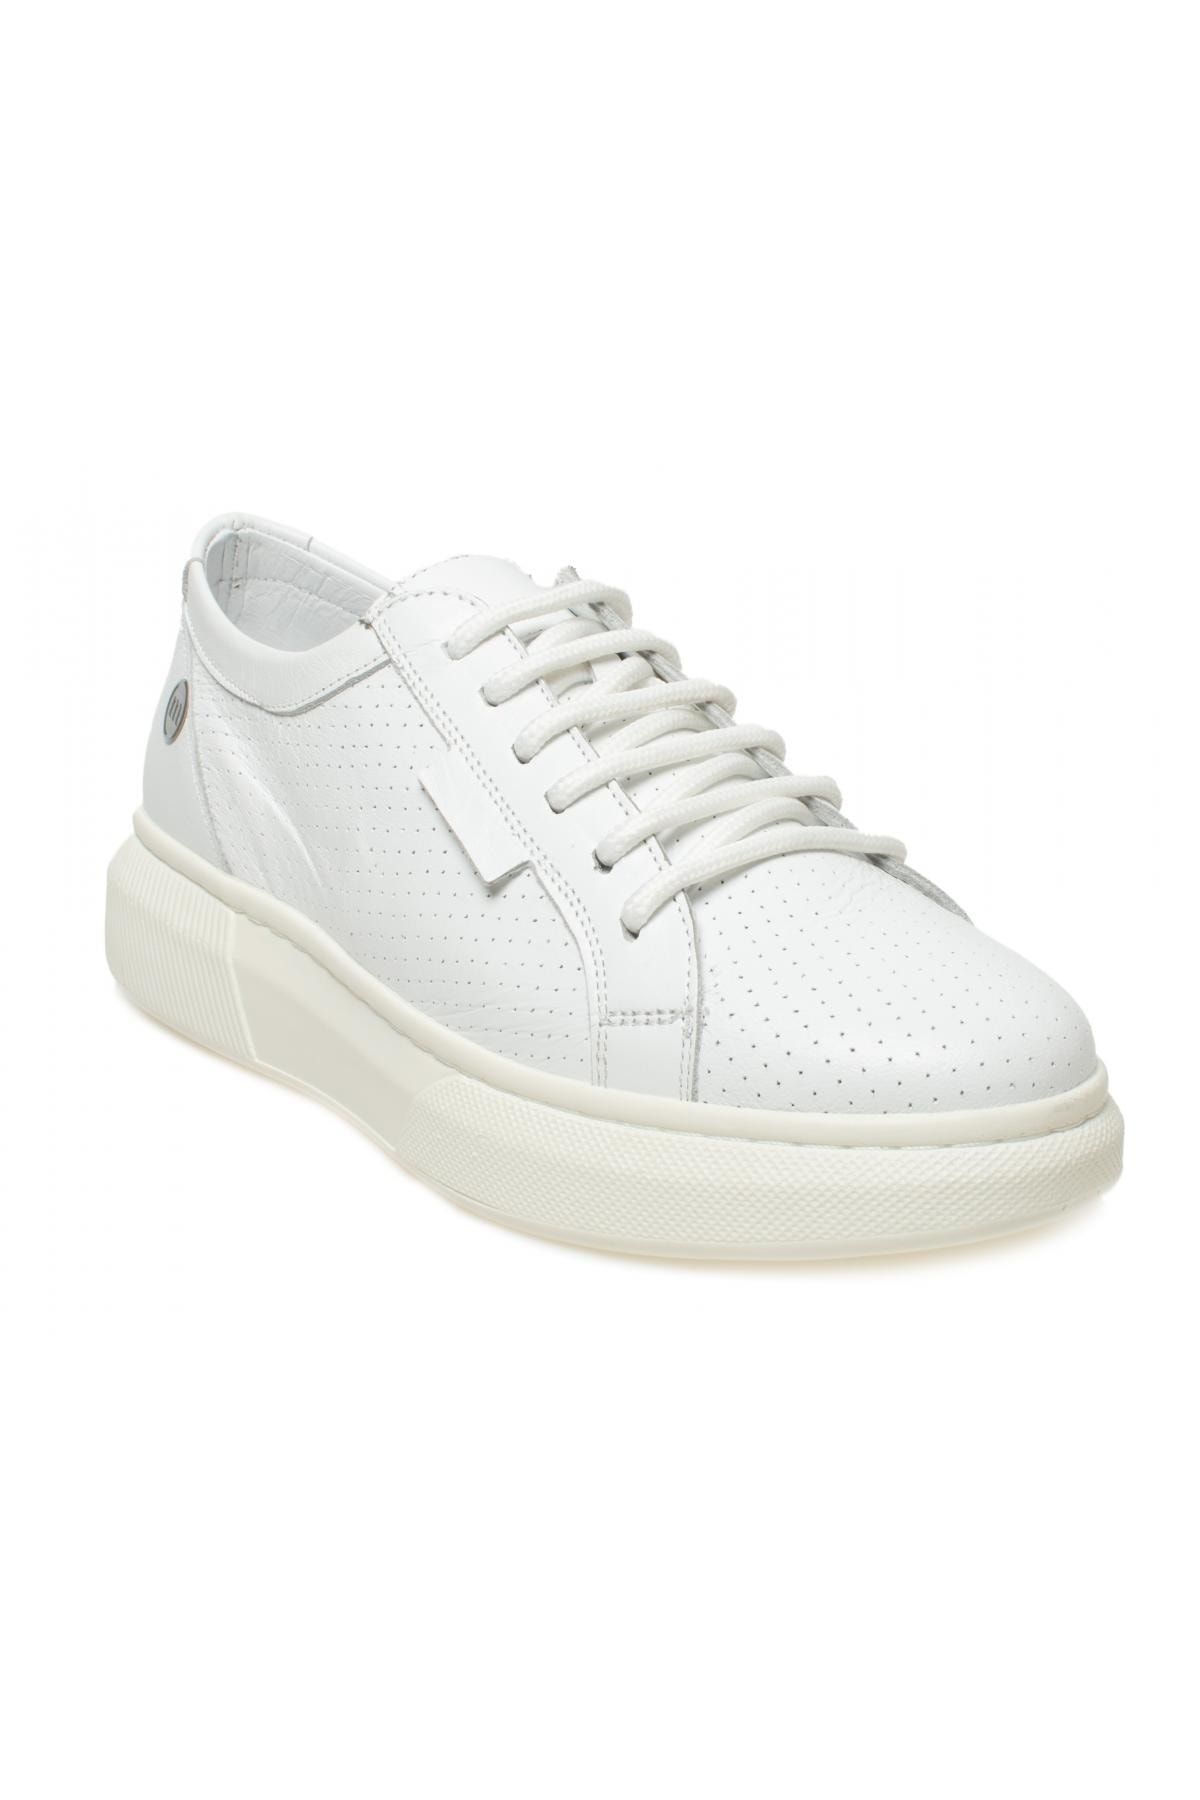 Mammamia D23ya-3515 Günlük Sneakers Beyaz Kadın Ayakkabı